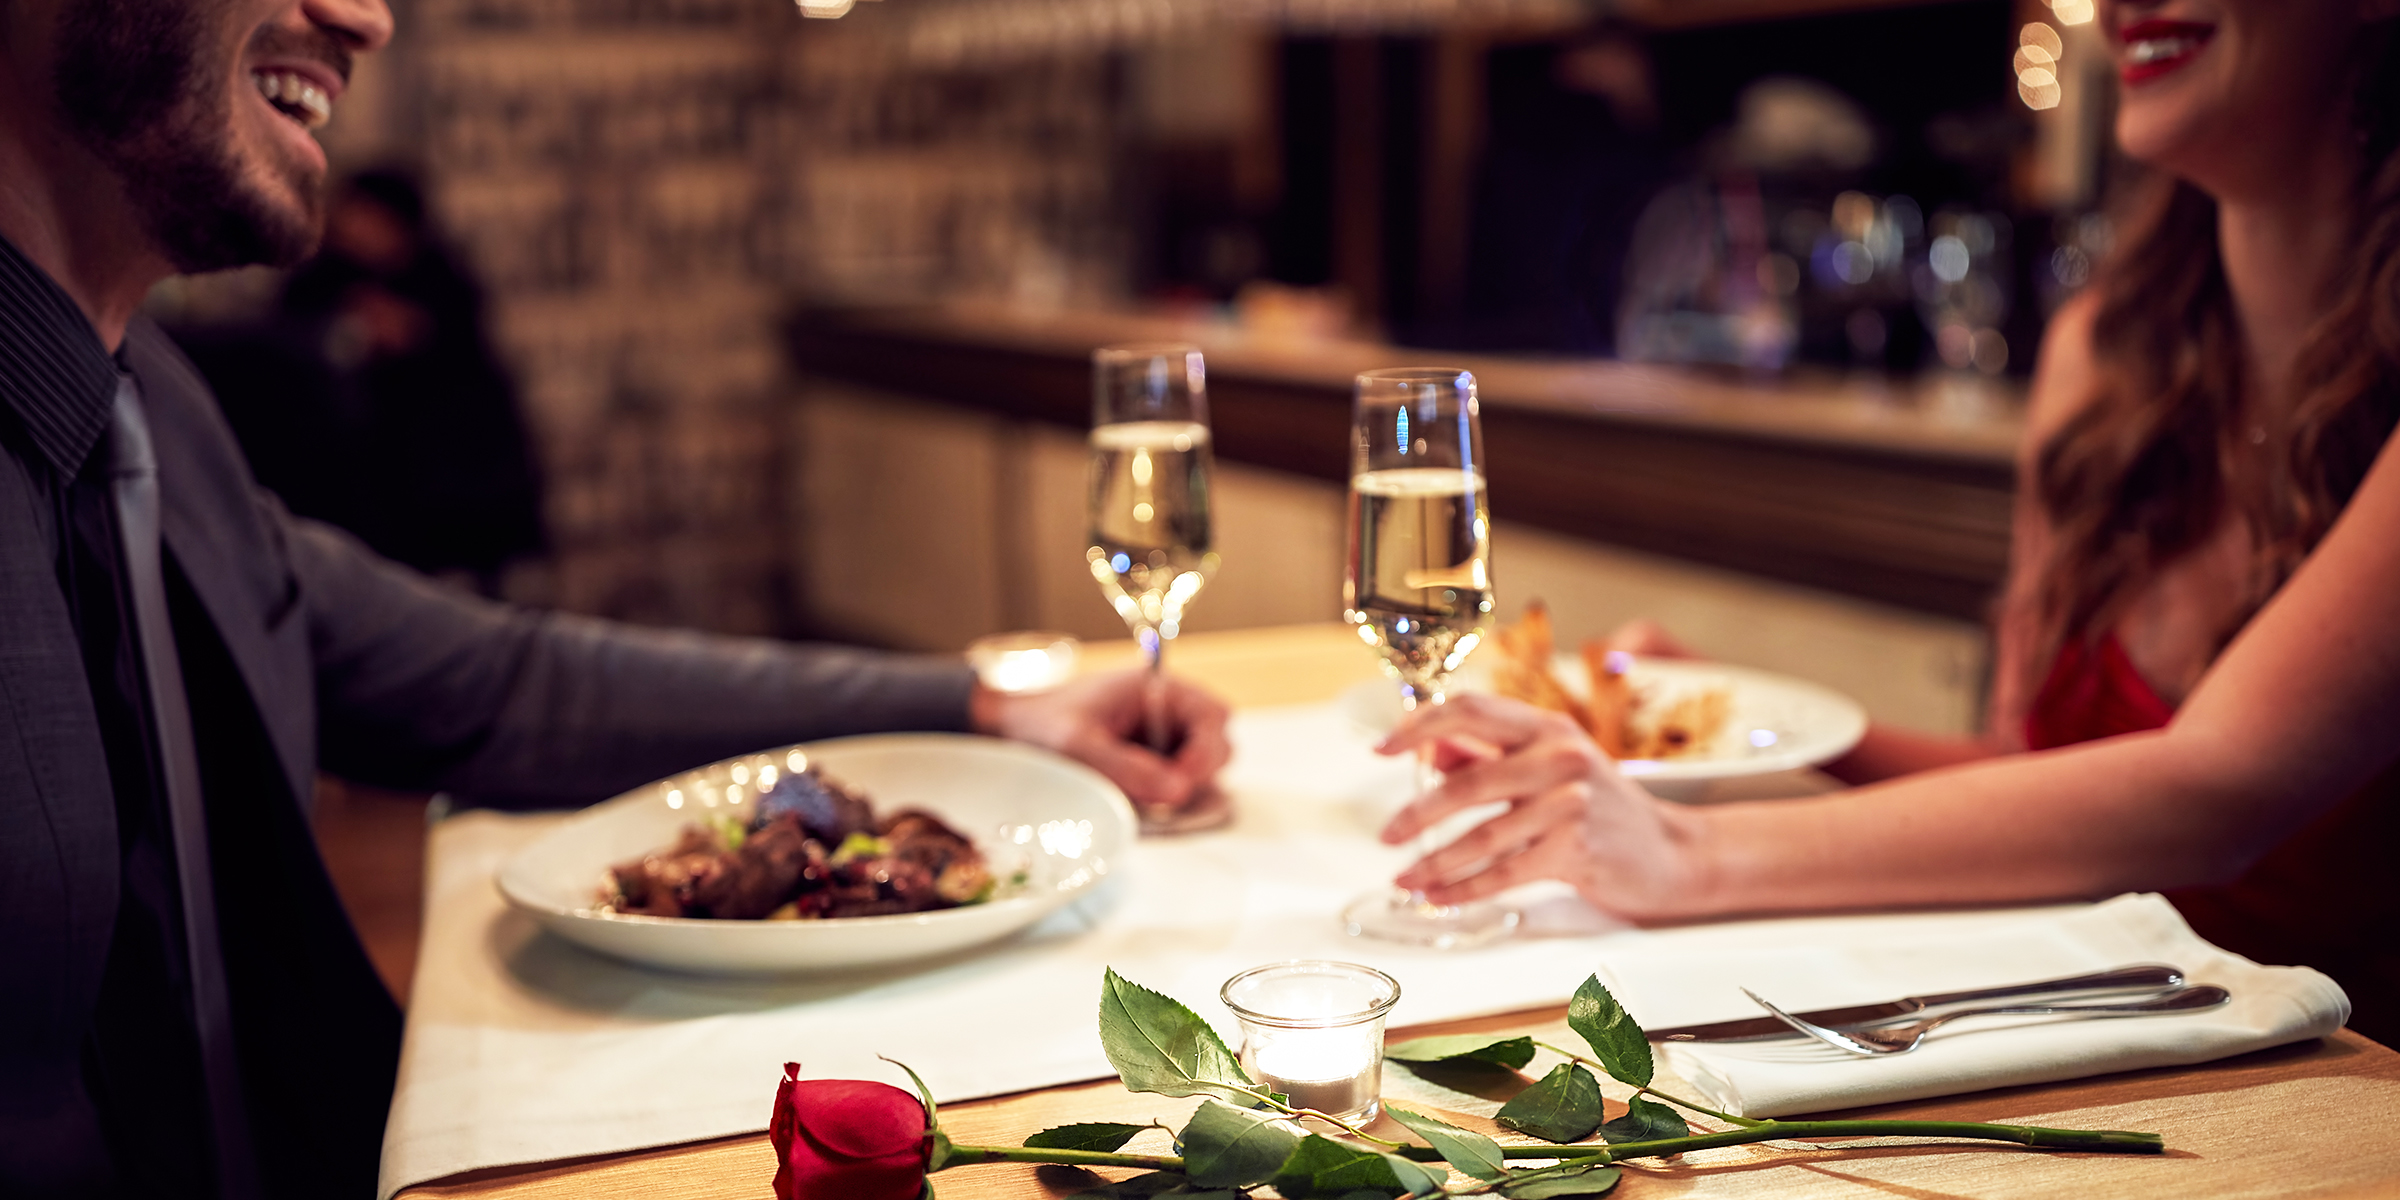 Ein Paar bei einem romantischen Abendessen | Quelle: Shutterstock